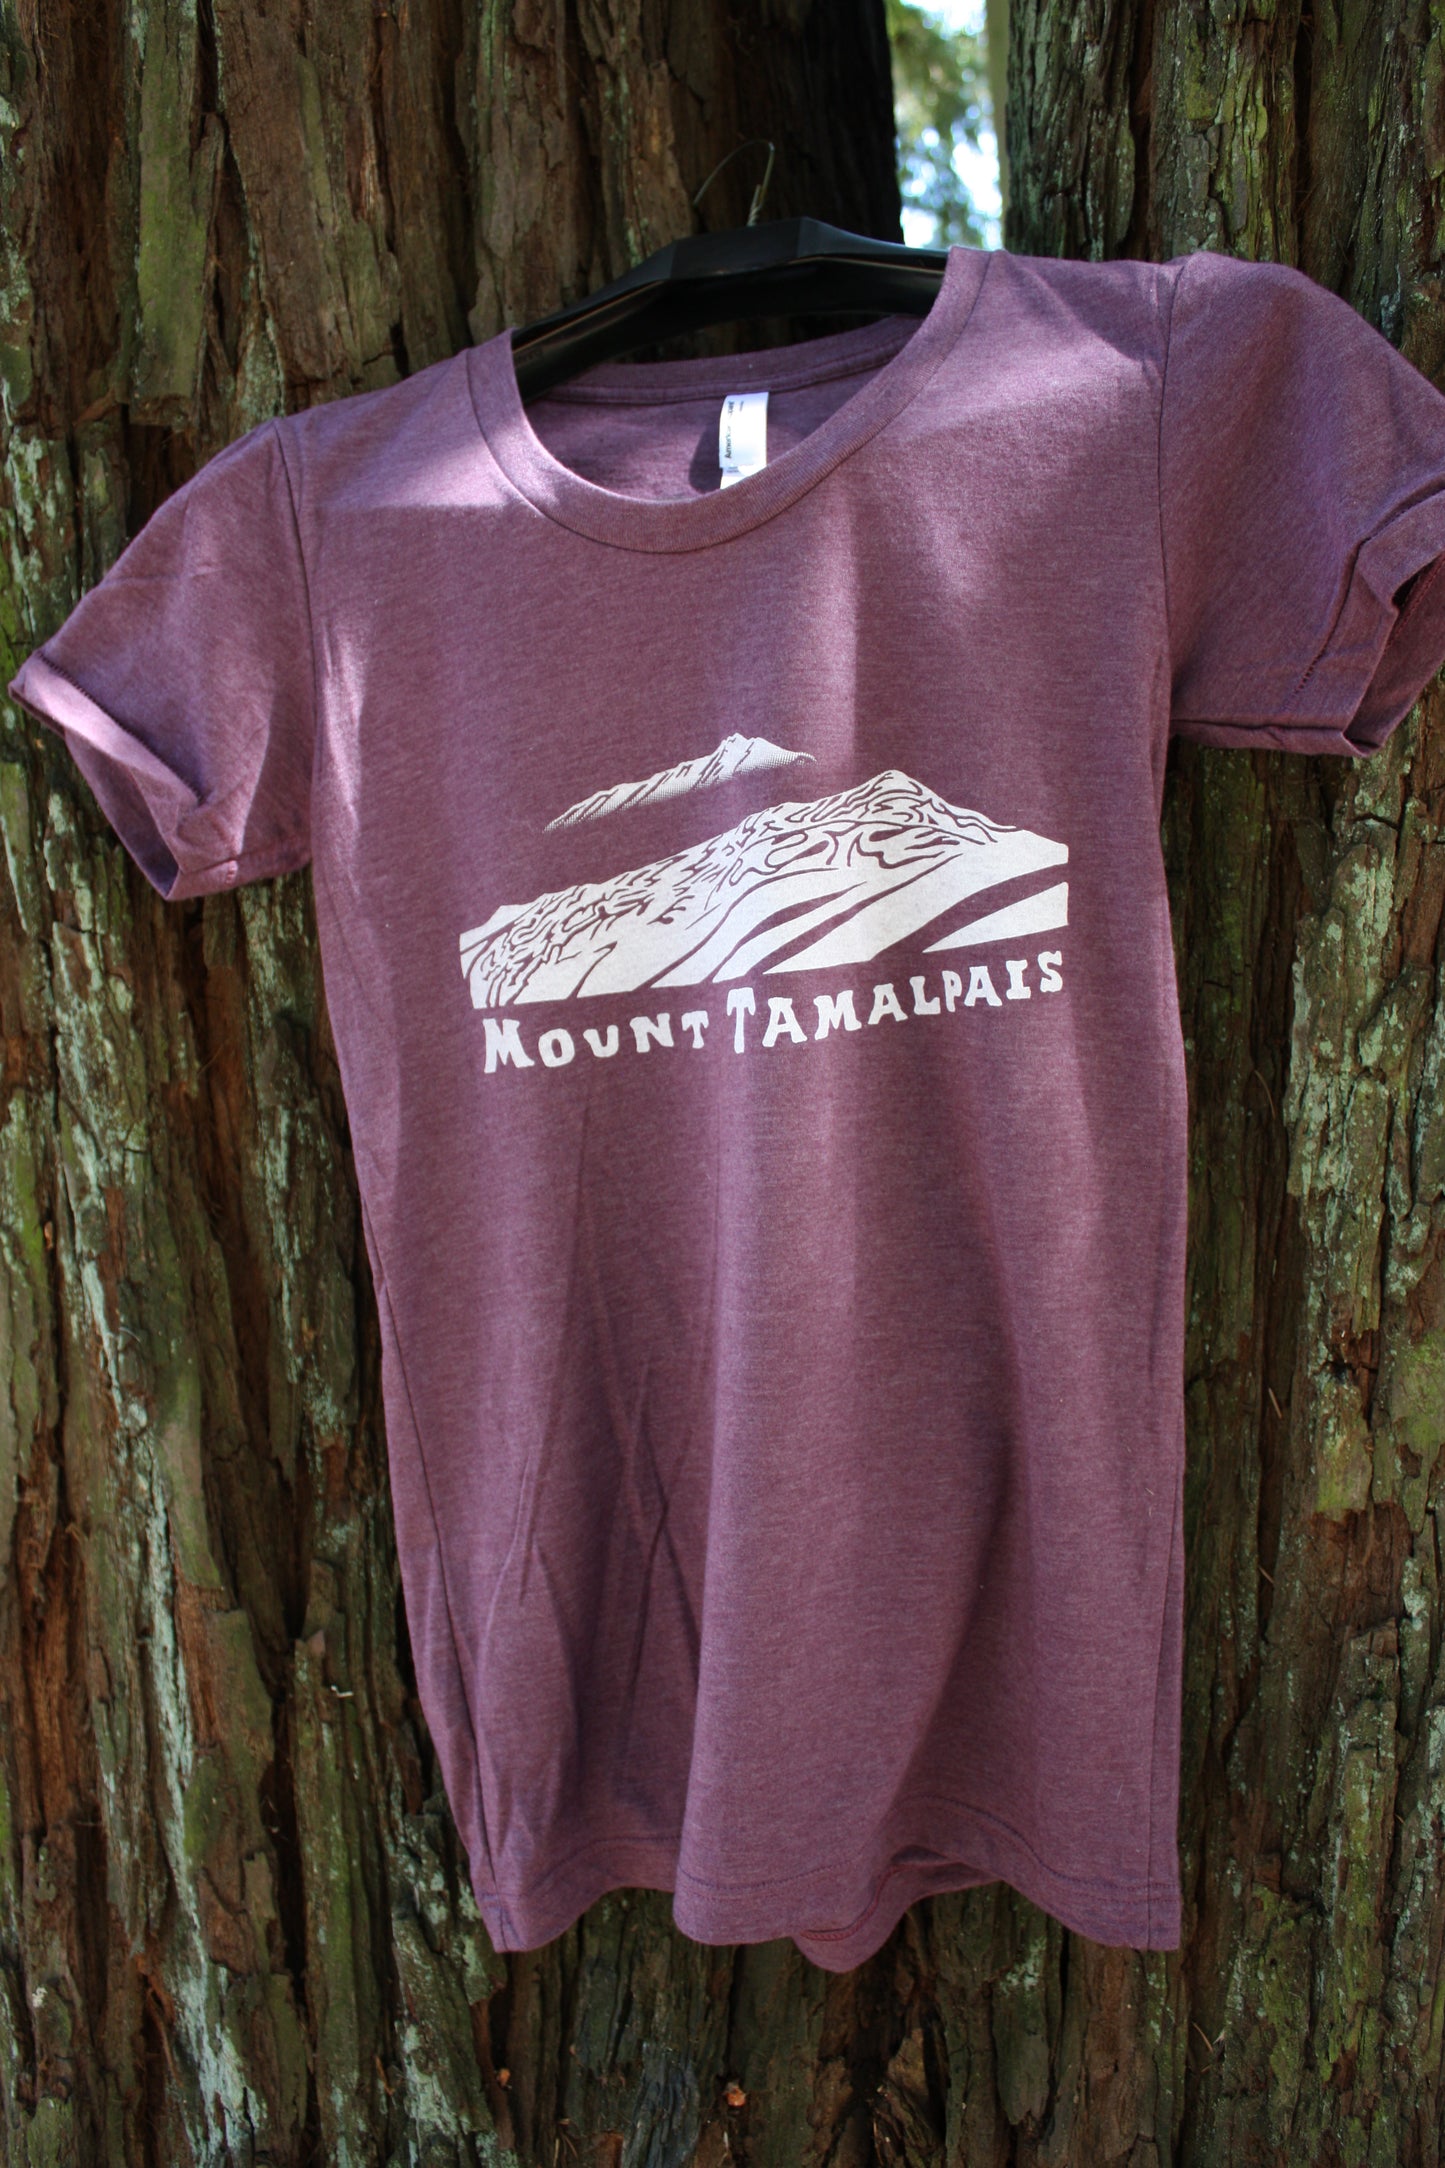 Mount Tamalpais Trail T-Shirt/ Womens